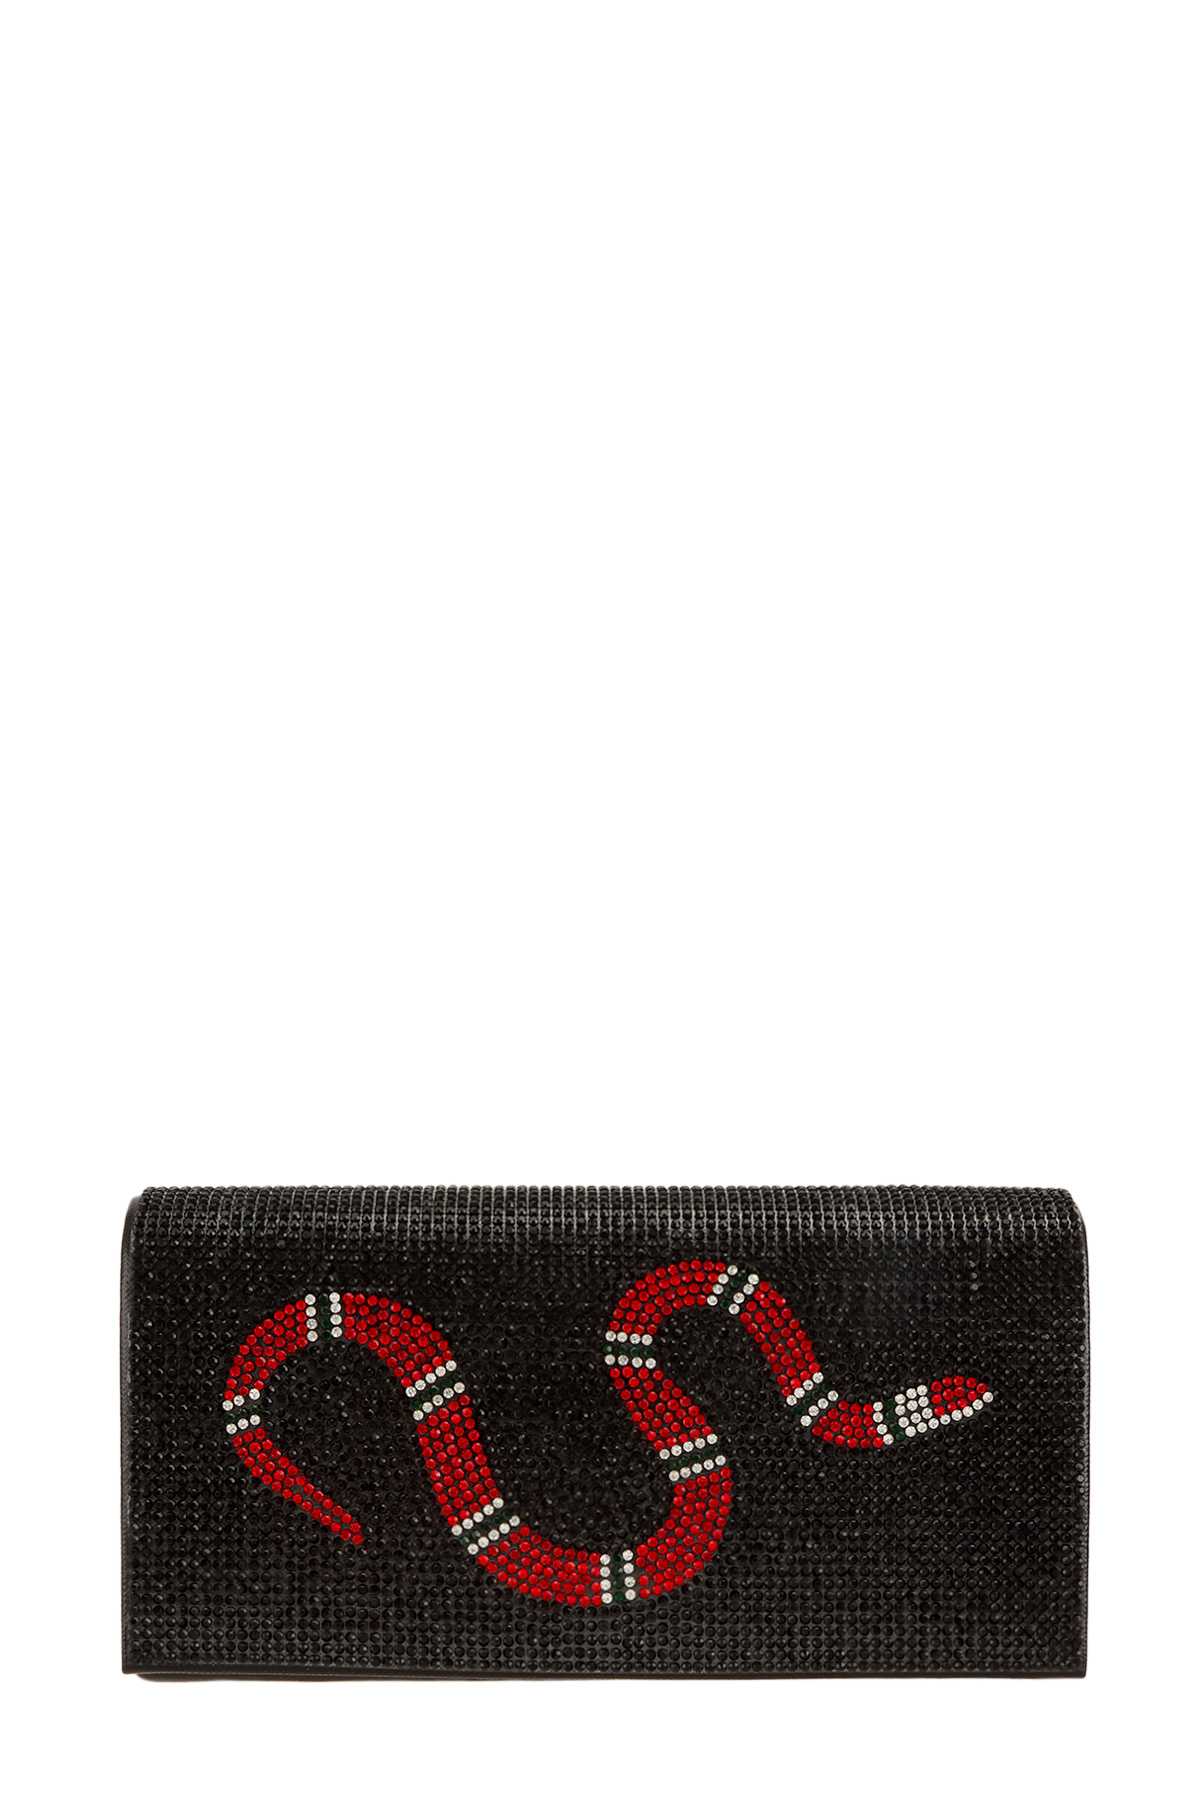 Red Snake Rhinestone Clutch Bag